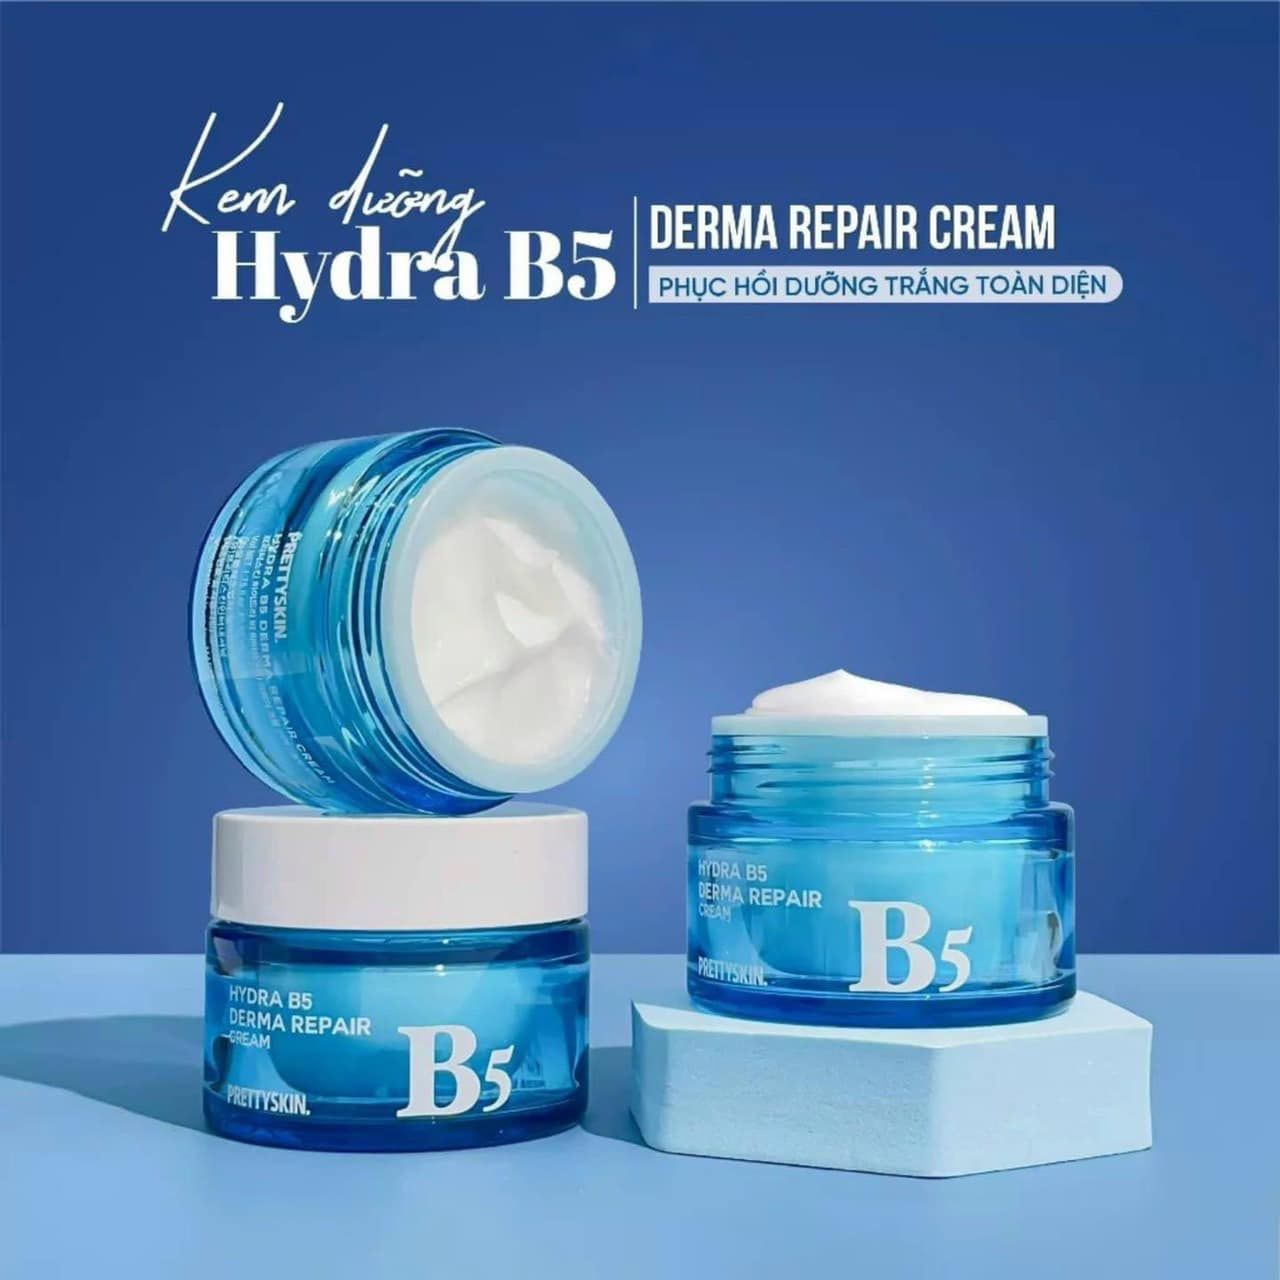 Kem dưỡng Pretty Skin Hydra B5 Derma Repair Cream 52ml Thanh Chân Cosmetics  cửa hàng mỹ phẩm chính hãng